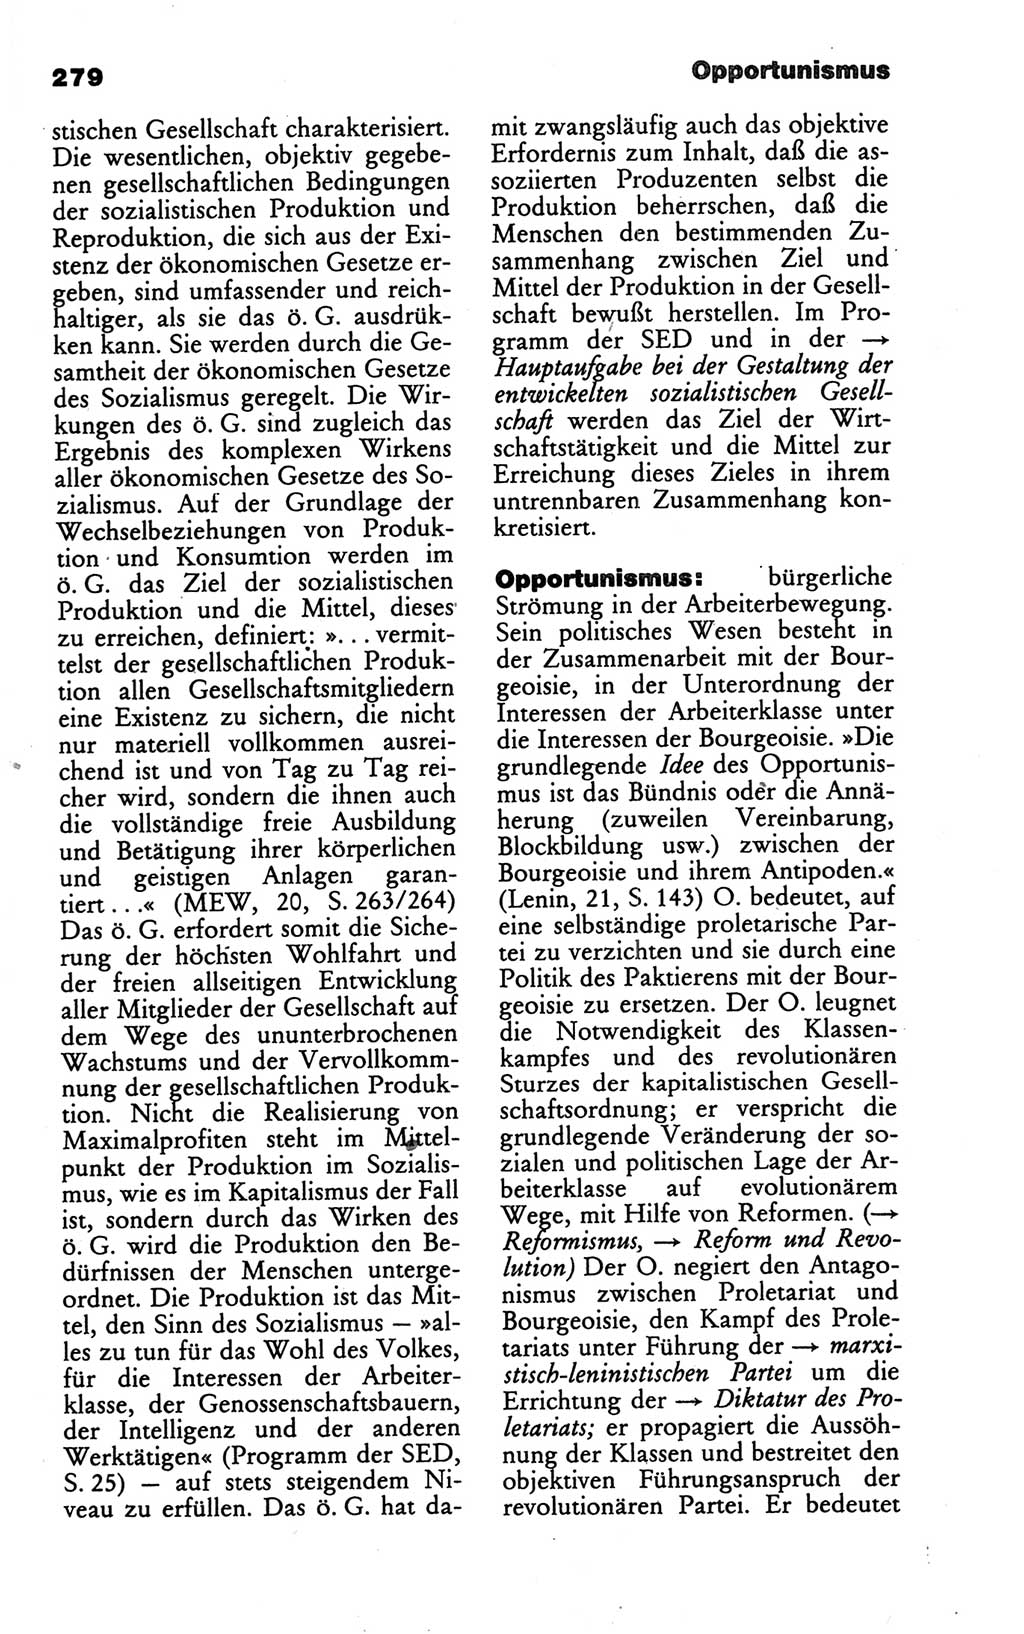 Wörterbuch des wissenschaftlichen Kommunismus [Deutsche Demokratische Republik (DDR)] 1986, Seite 279 (Wb. wiss. Komm. DDR 1986, S. 279)